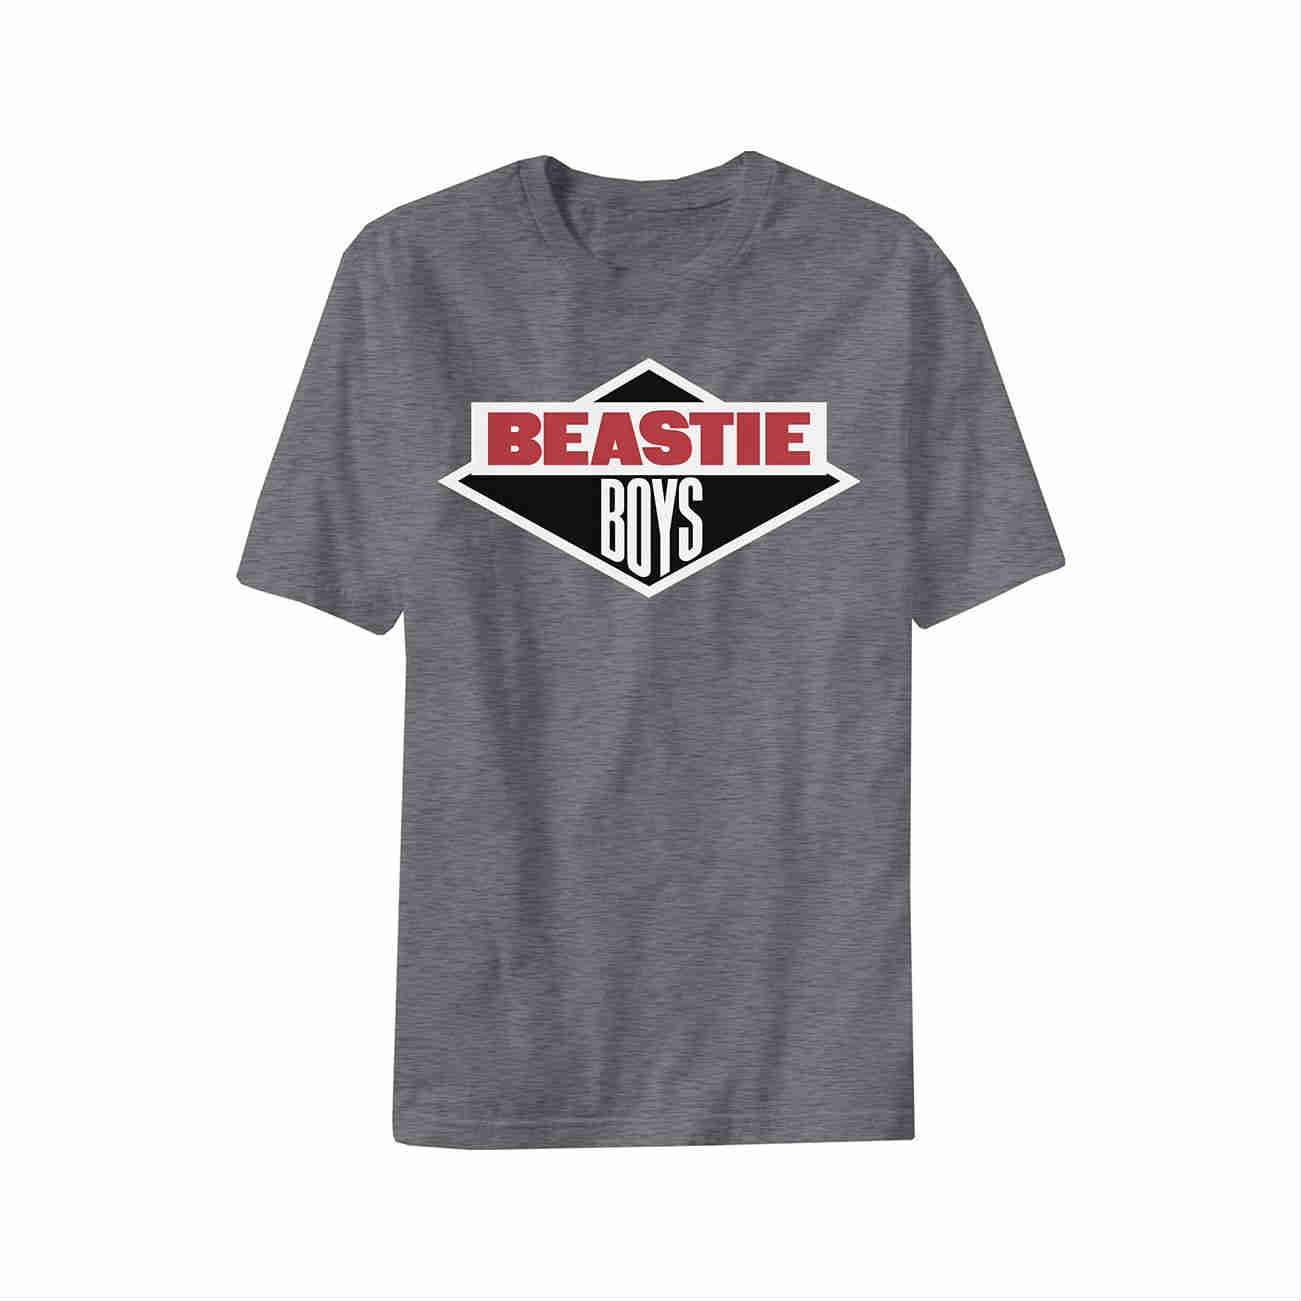 beastie boys ビースティーボーイズ Tシャツ コピーライト©️有り